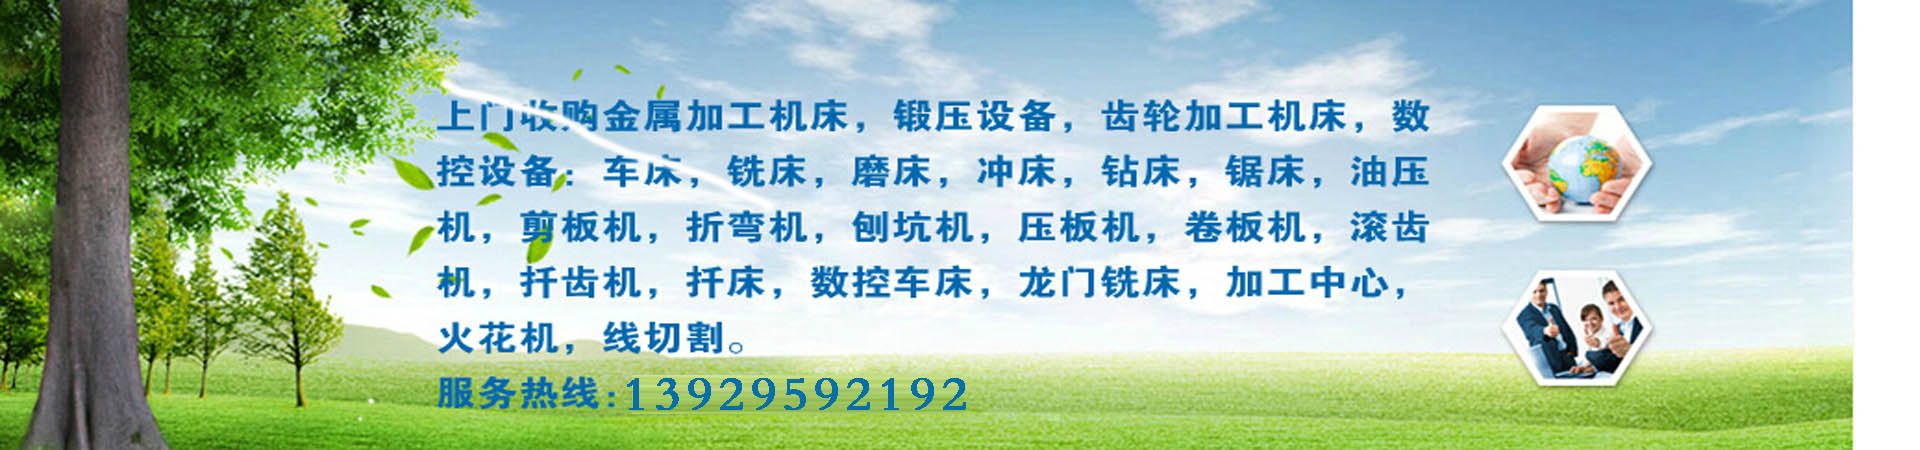 上海广告制作